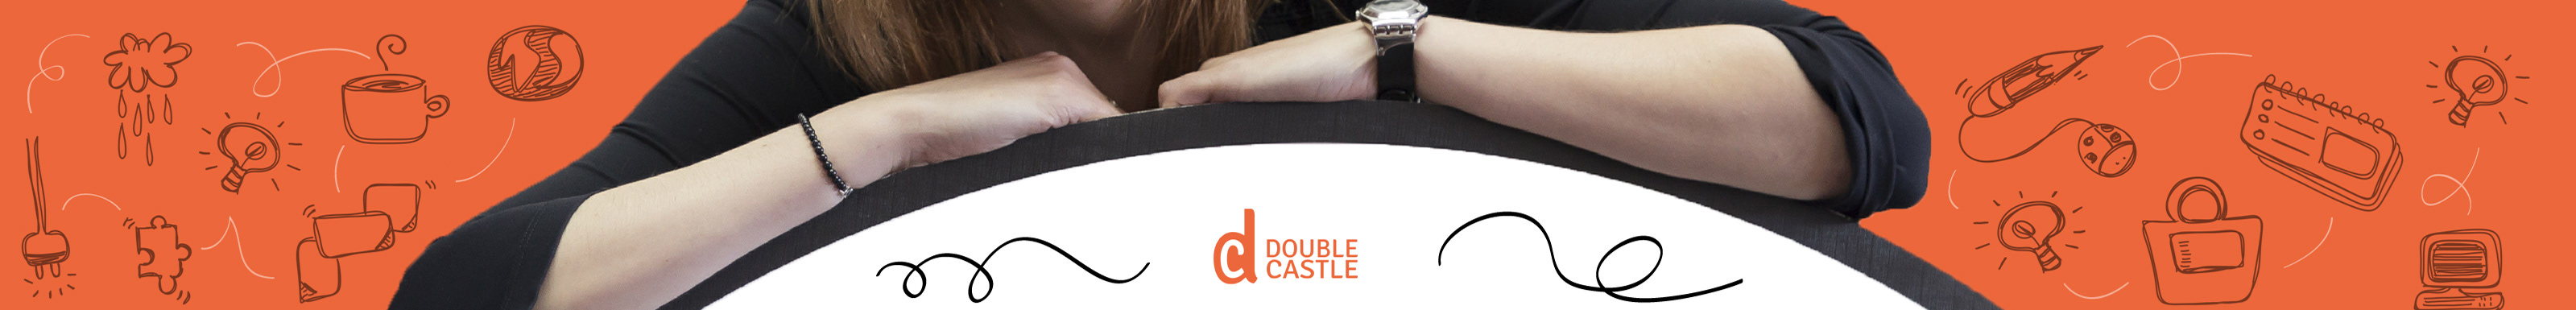 Banner profilu uživatele Double Castle